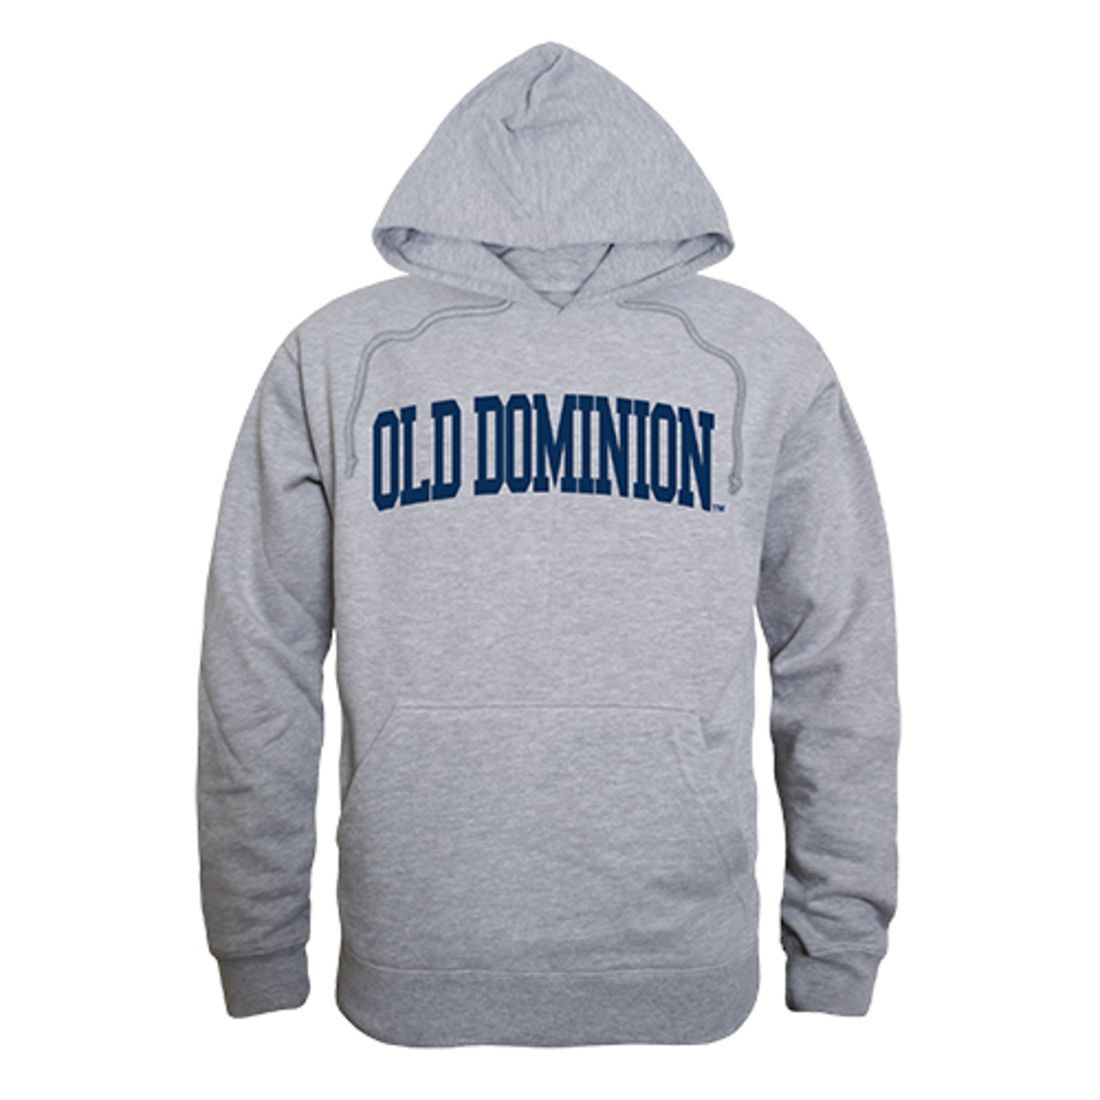 Old Dominion University Monarchs Game Day Hoodie Sweatshirt Heather Grey-Campus-Wardrobe